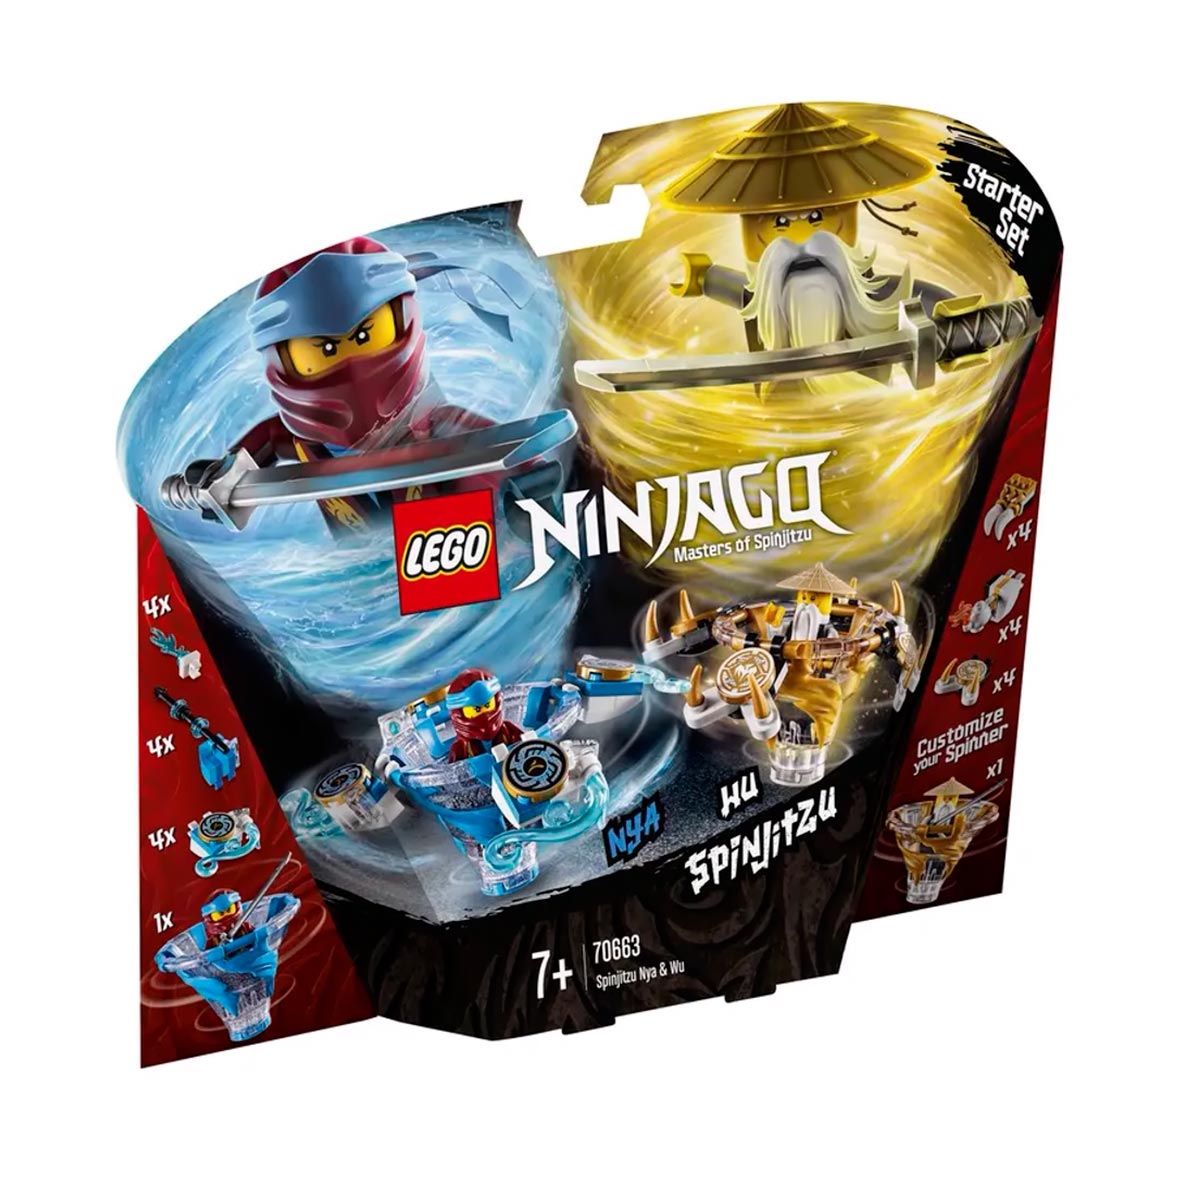 LEGO Ninjago - Spinjitzu Nya e Wu - 70663